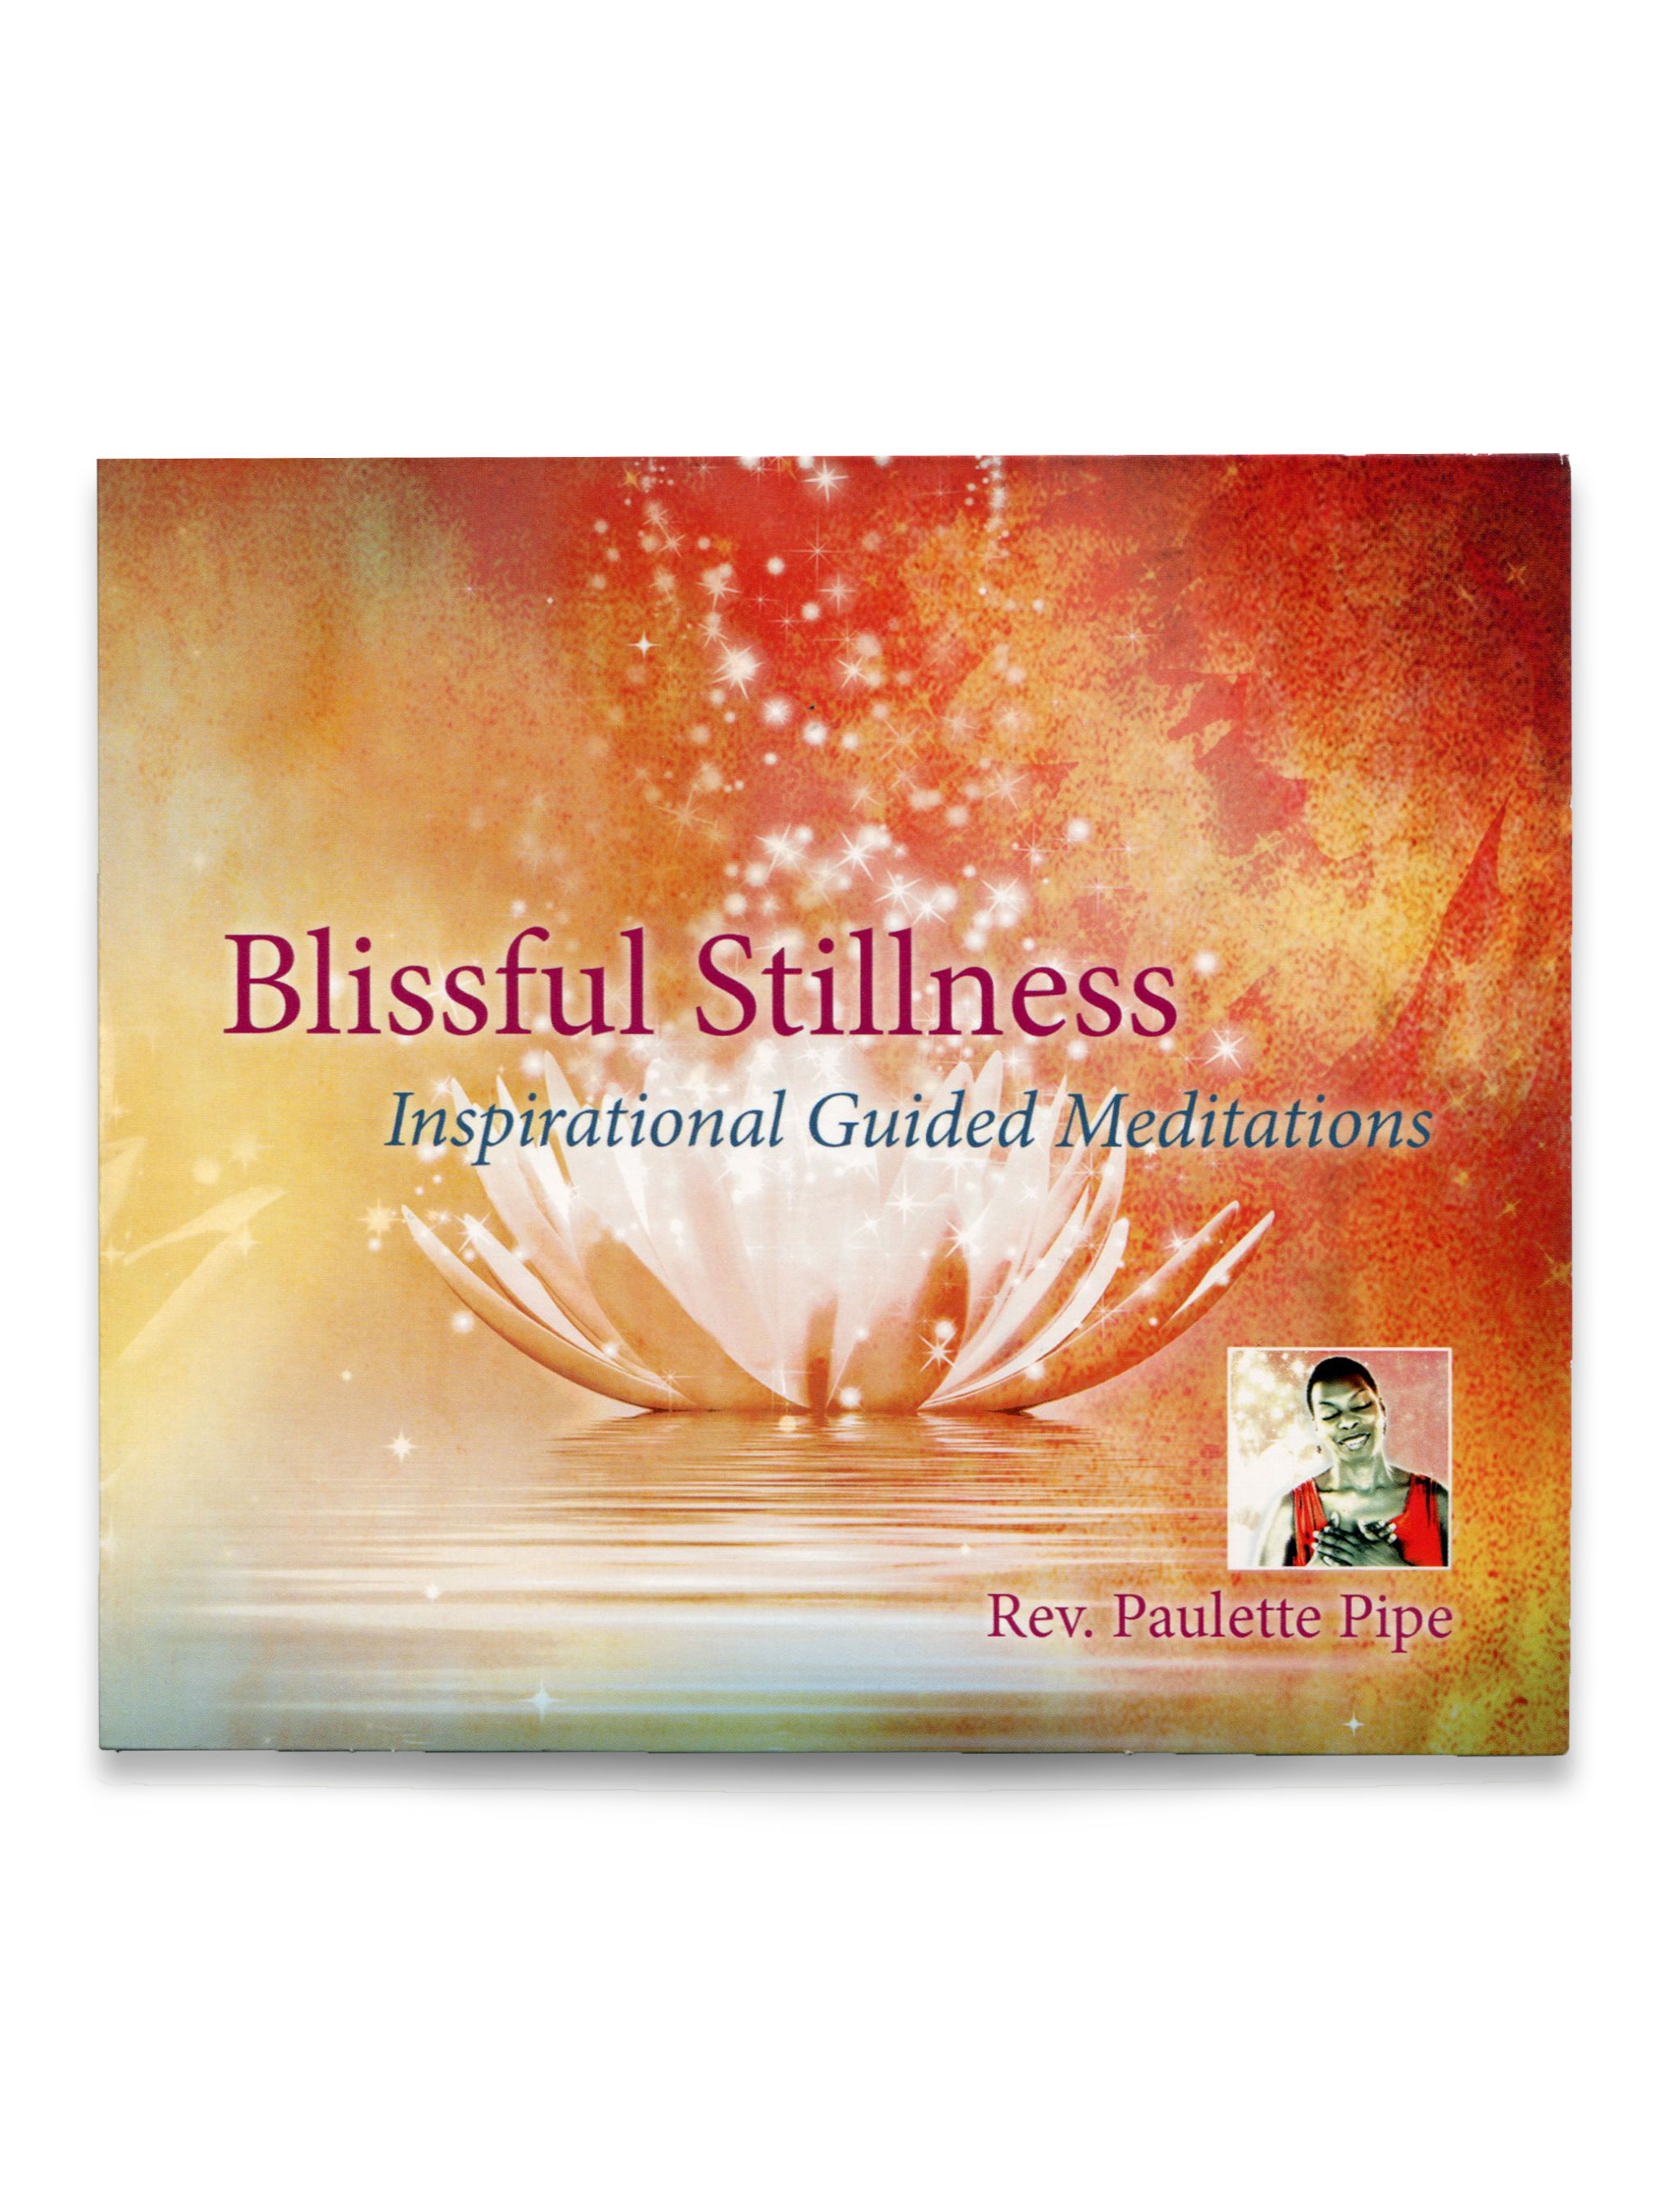 Blissful Stillness: Inspirational Guided Meditations